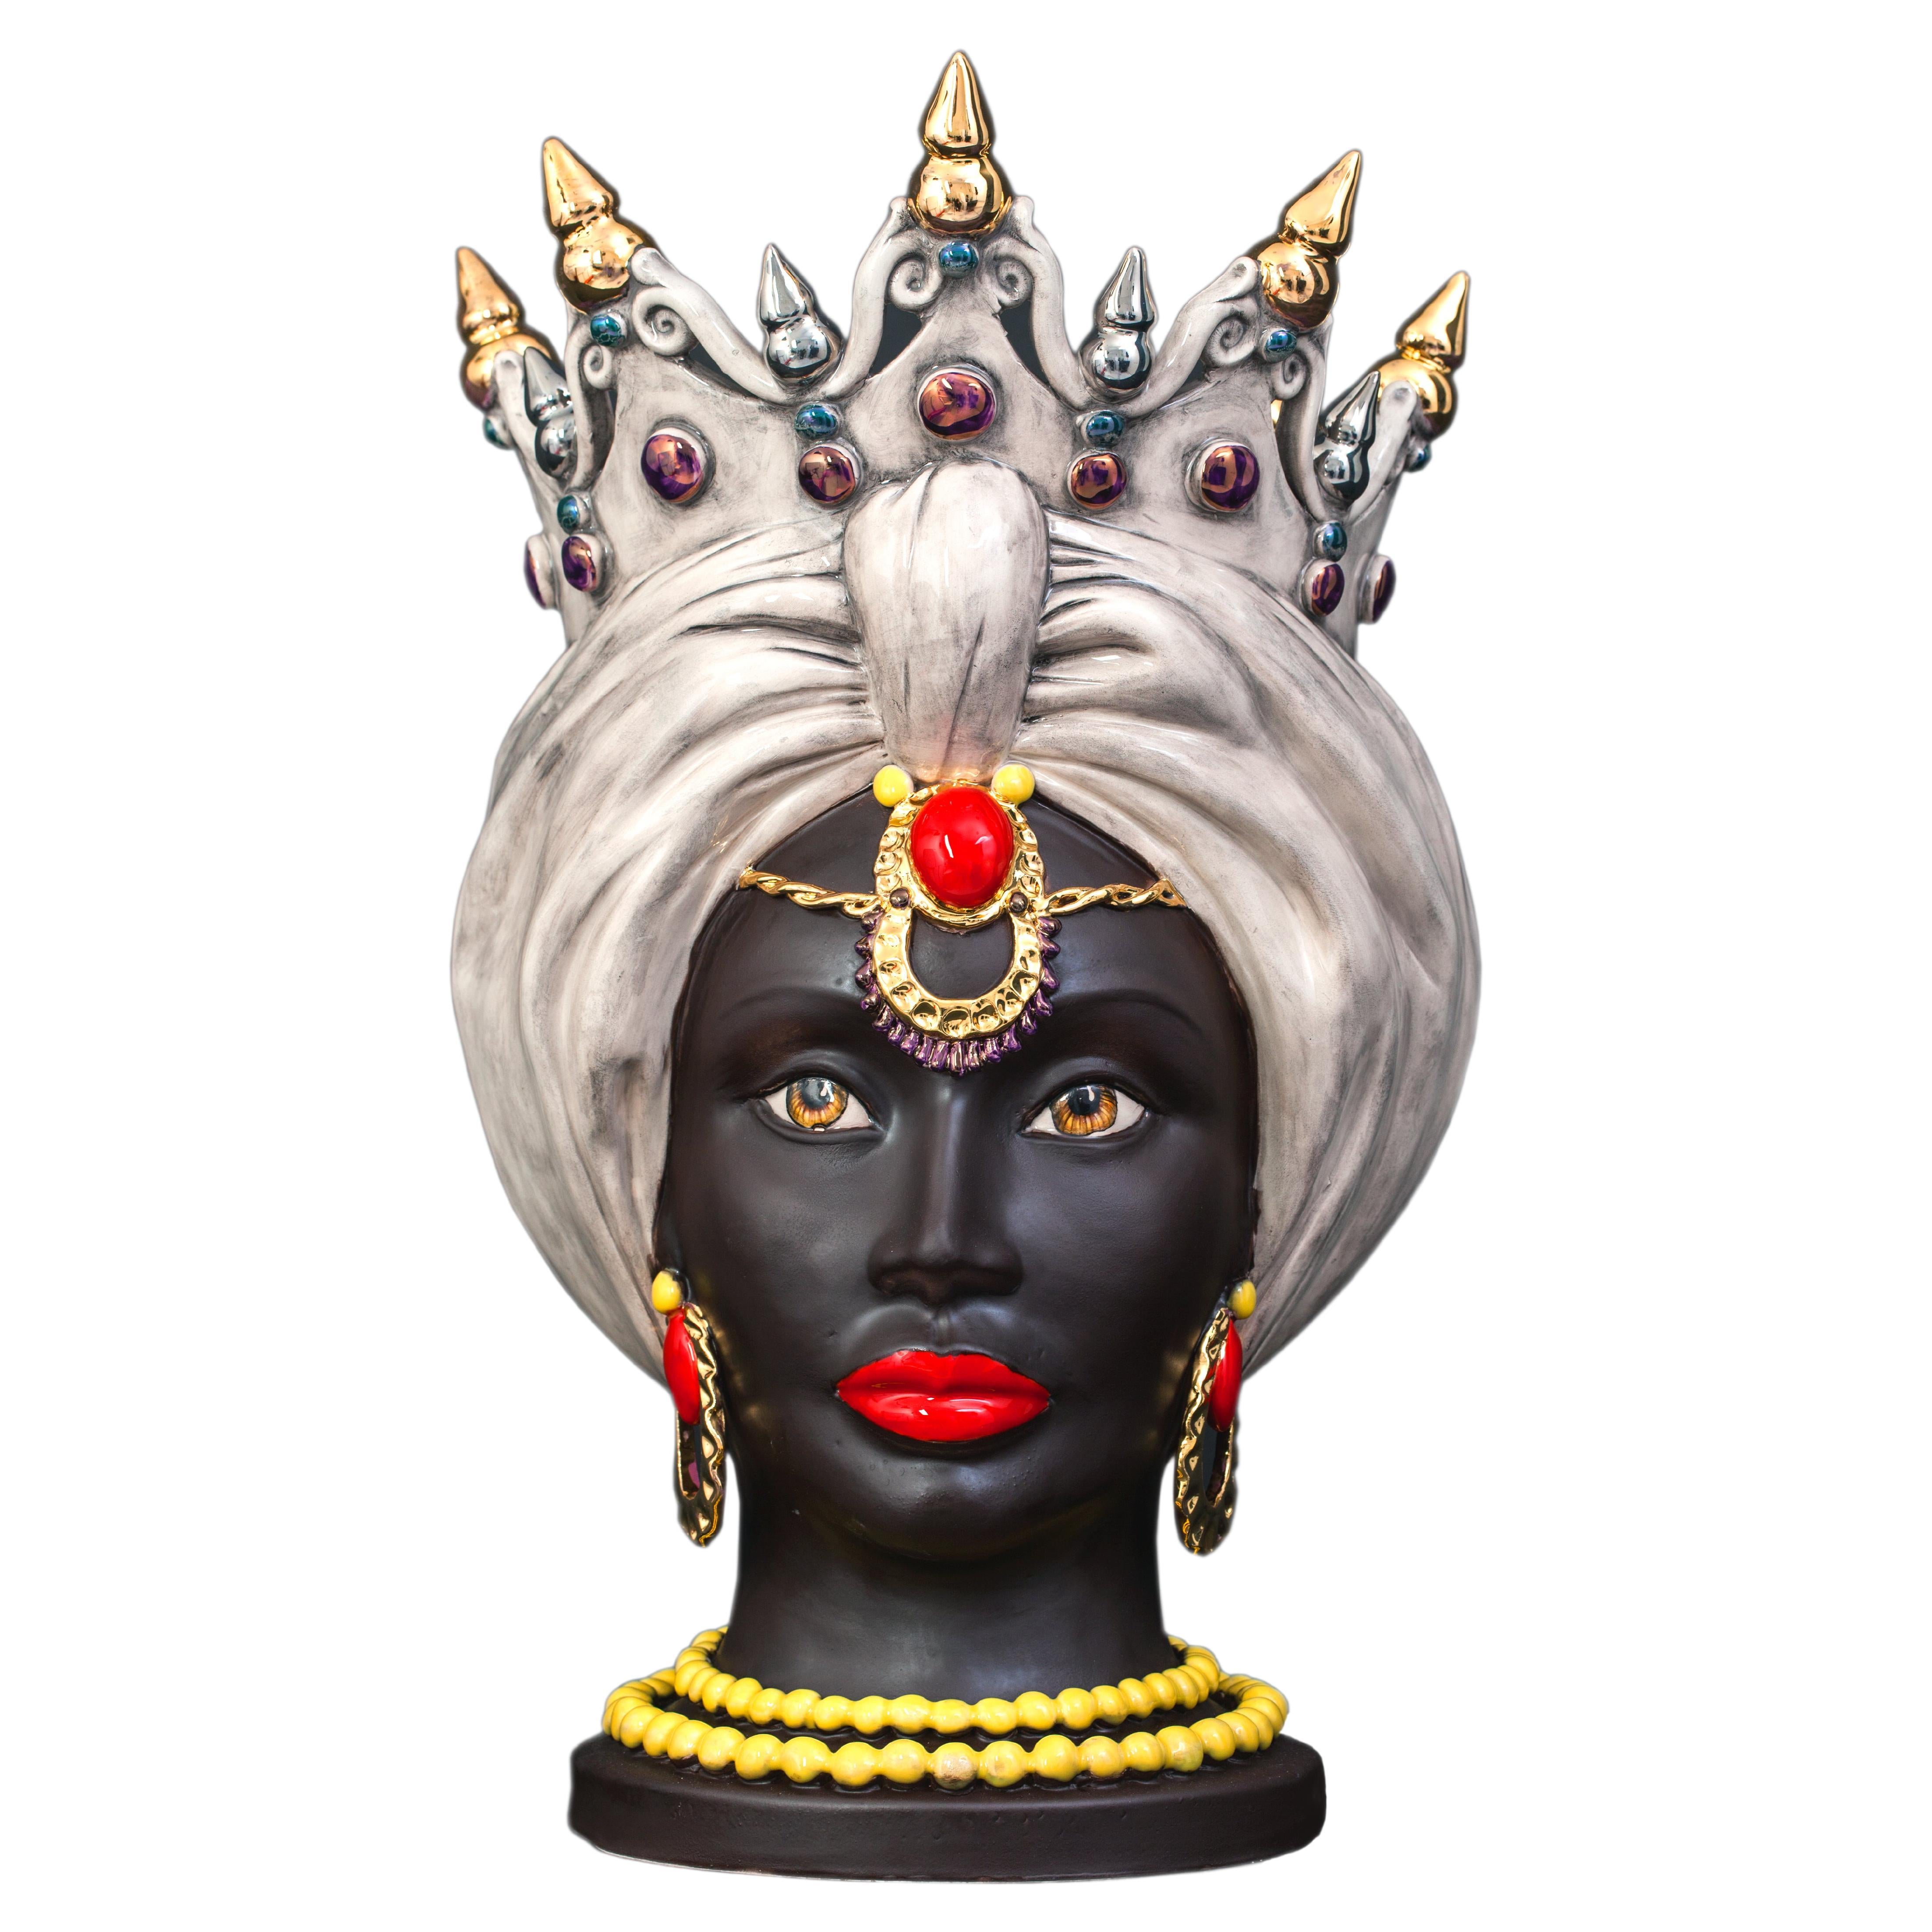 Venere V23, Woman's Moorish Head, Handmade in Sicily, 2021, Gold finish, Size S